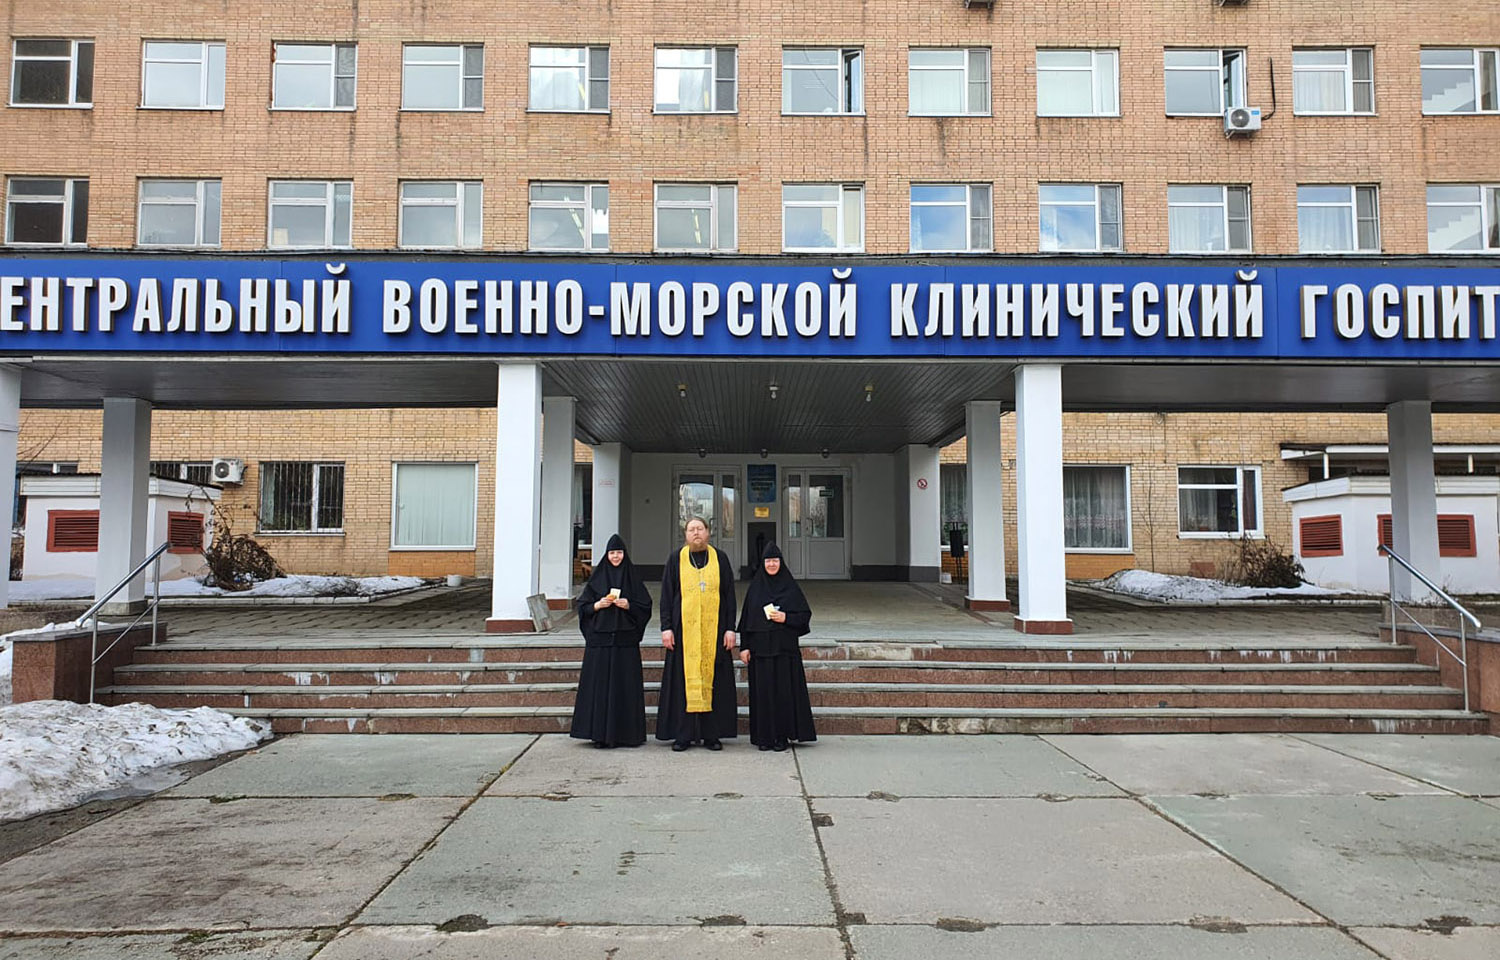 Священнослужитель и насельницы Покровской обители посетили раненых бойцов в Центральном военно-морском клиническом госпитале